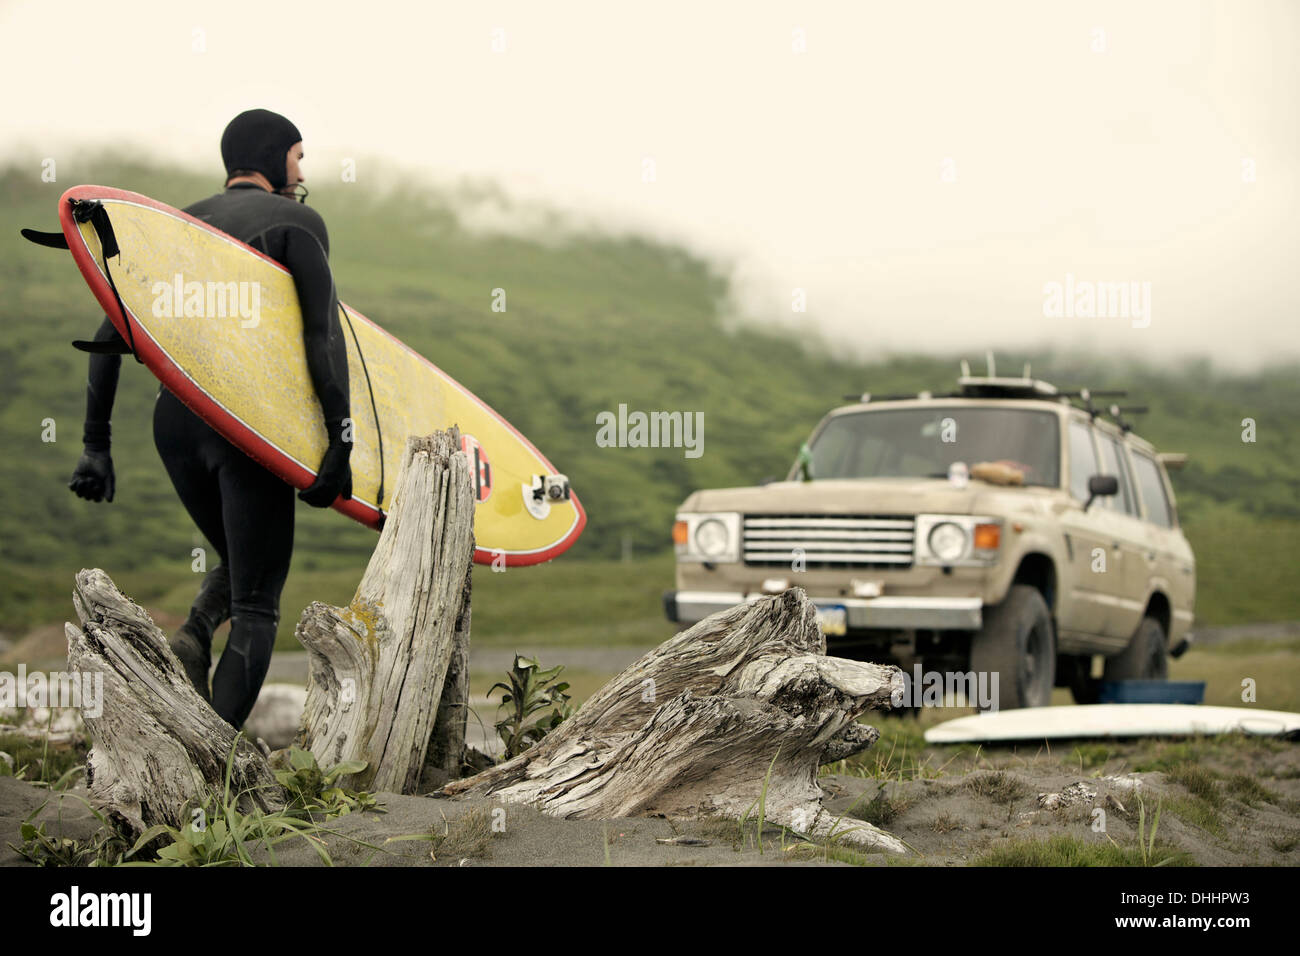 Man carrying surfboard towards car, Kodiak, Alaska, USA Stock Photo